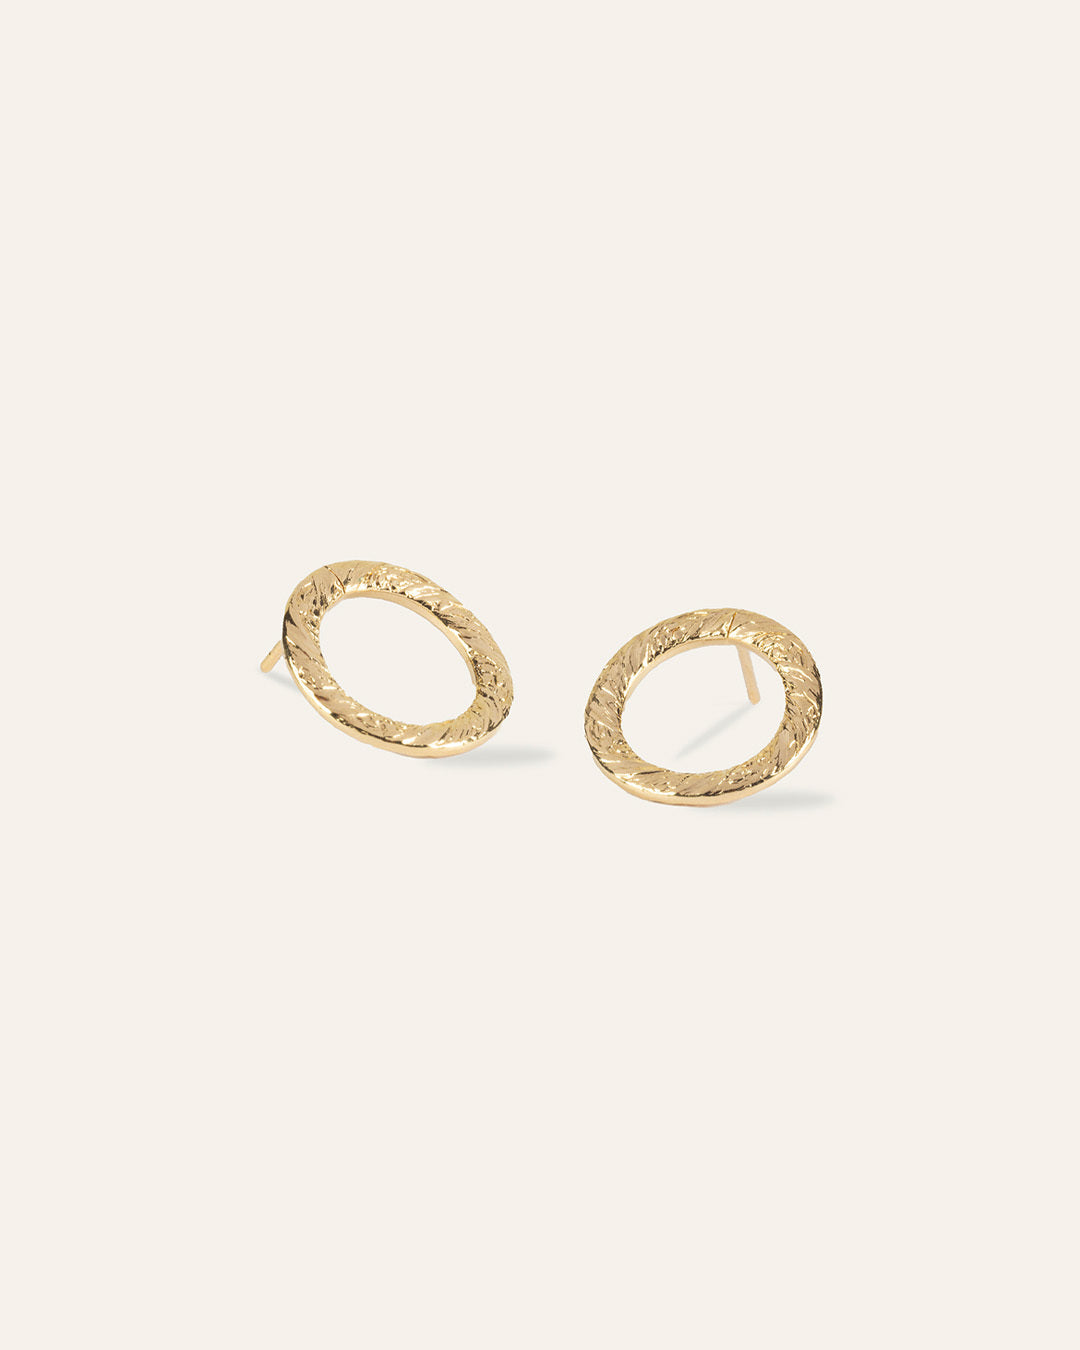 Boucles d'oreilles en anneaux, en plaqué or 3 microns, au motif texturé de style vintage made in France.